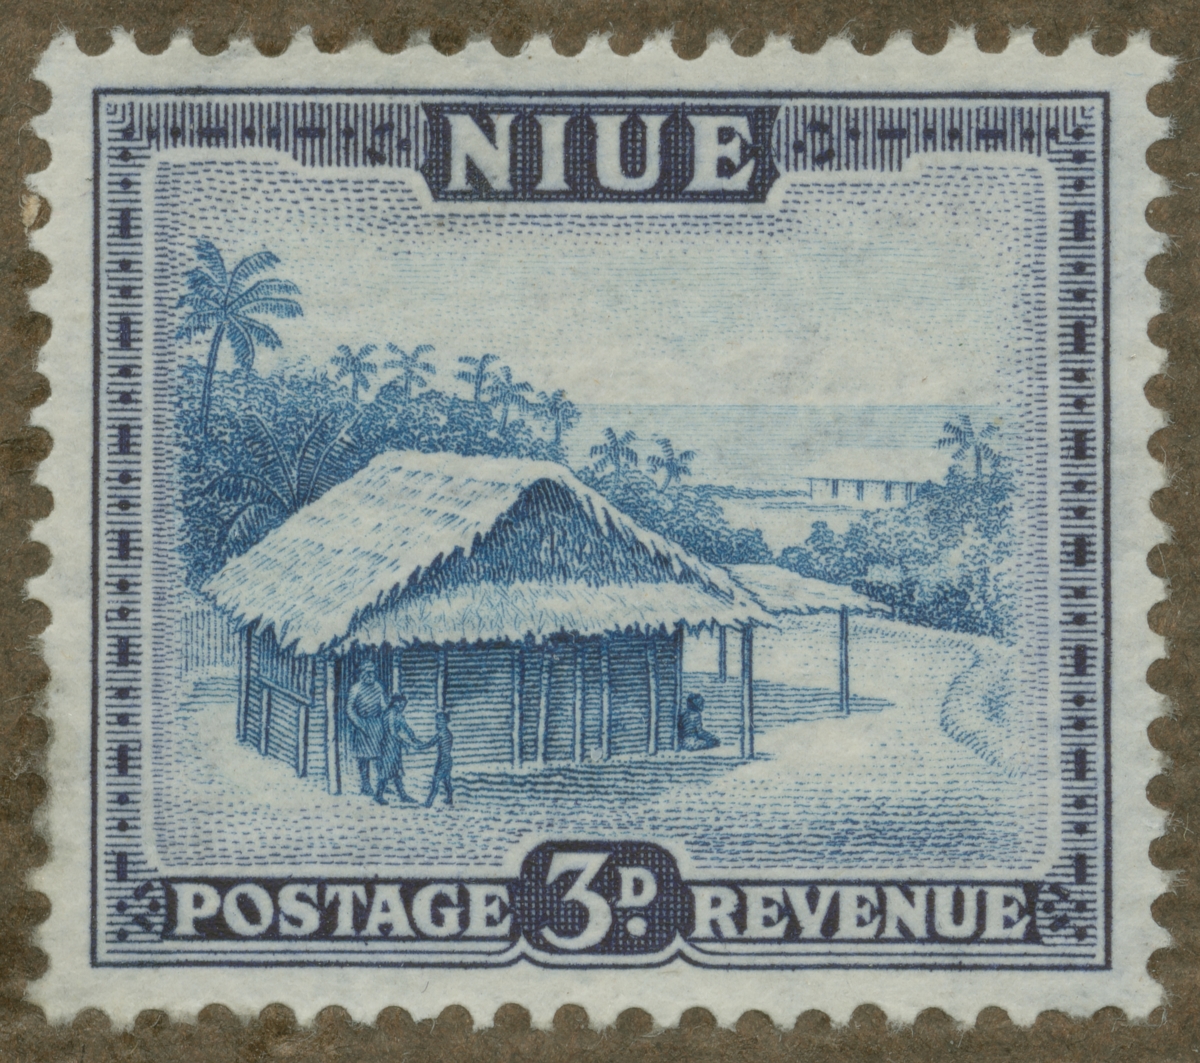 Frimärke ur Gösta Bodmans filatelistiska motivsamling, påbörjad 1950.
Frimärke från Niue, 1950. Motiv av hydda i Niue, Stilla havet.